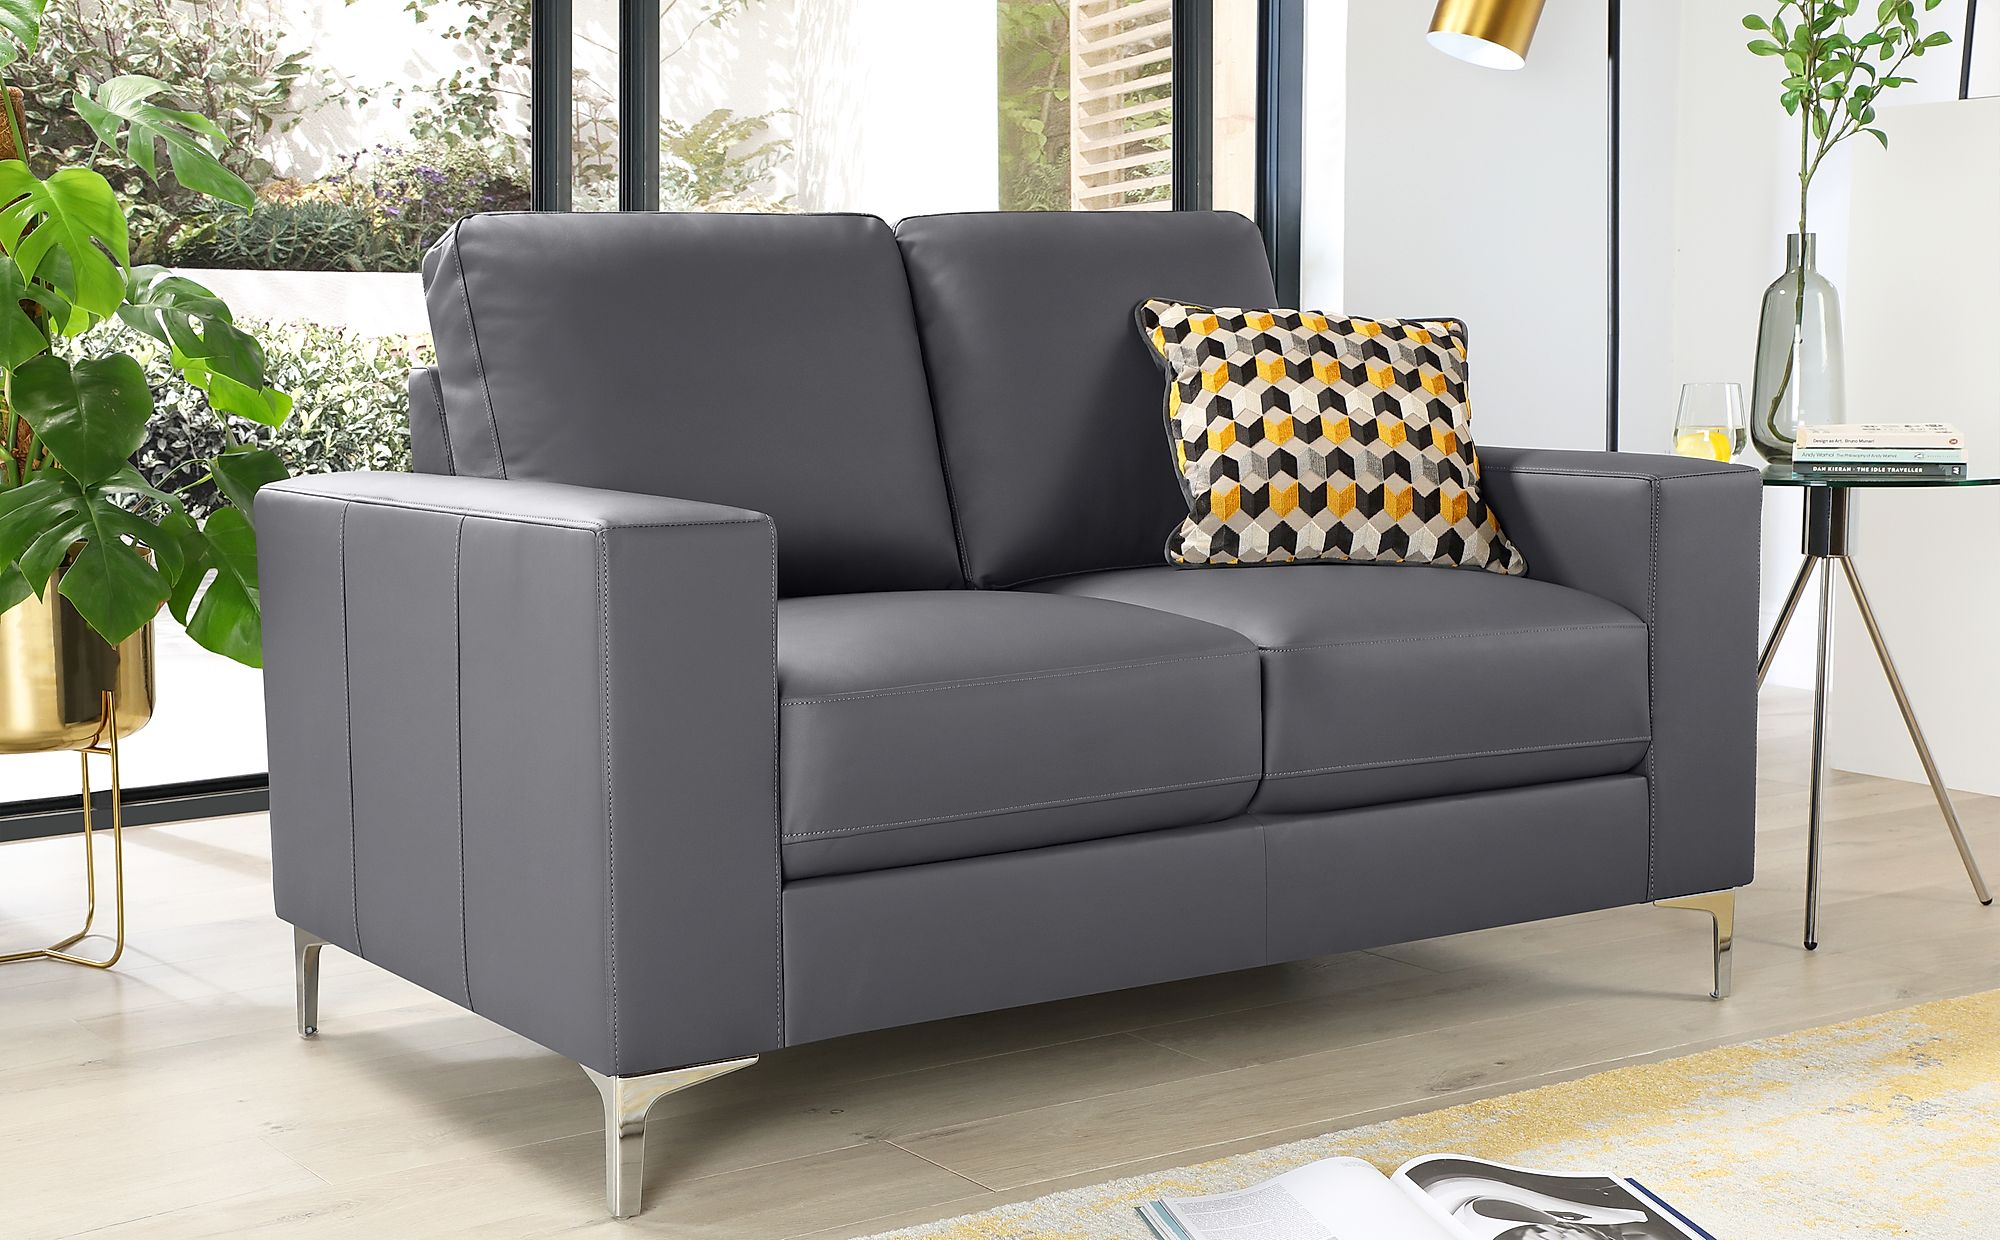 2 tone grey leather sofa